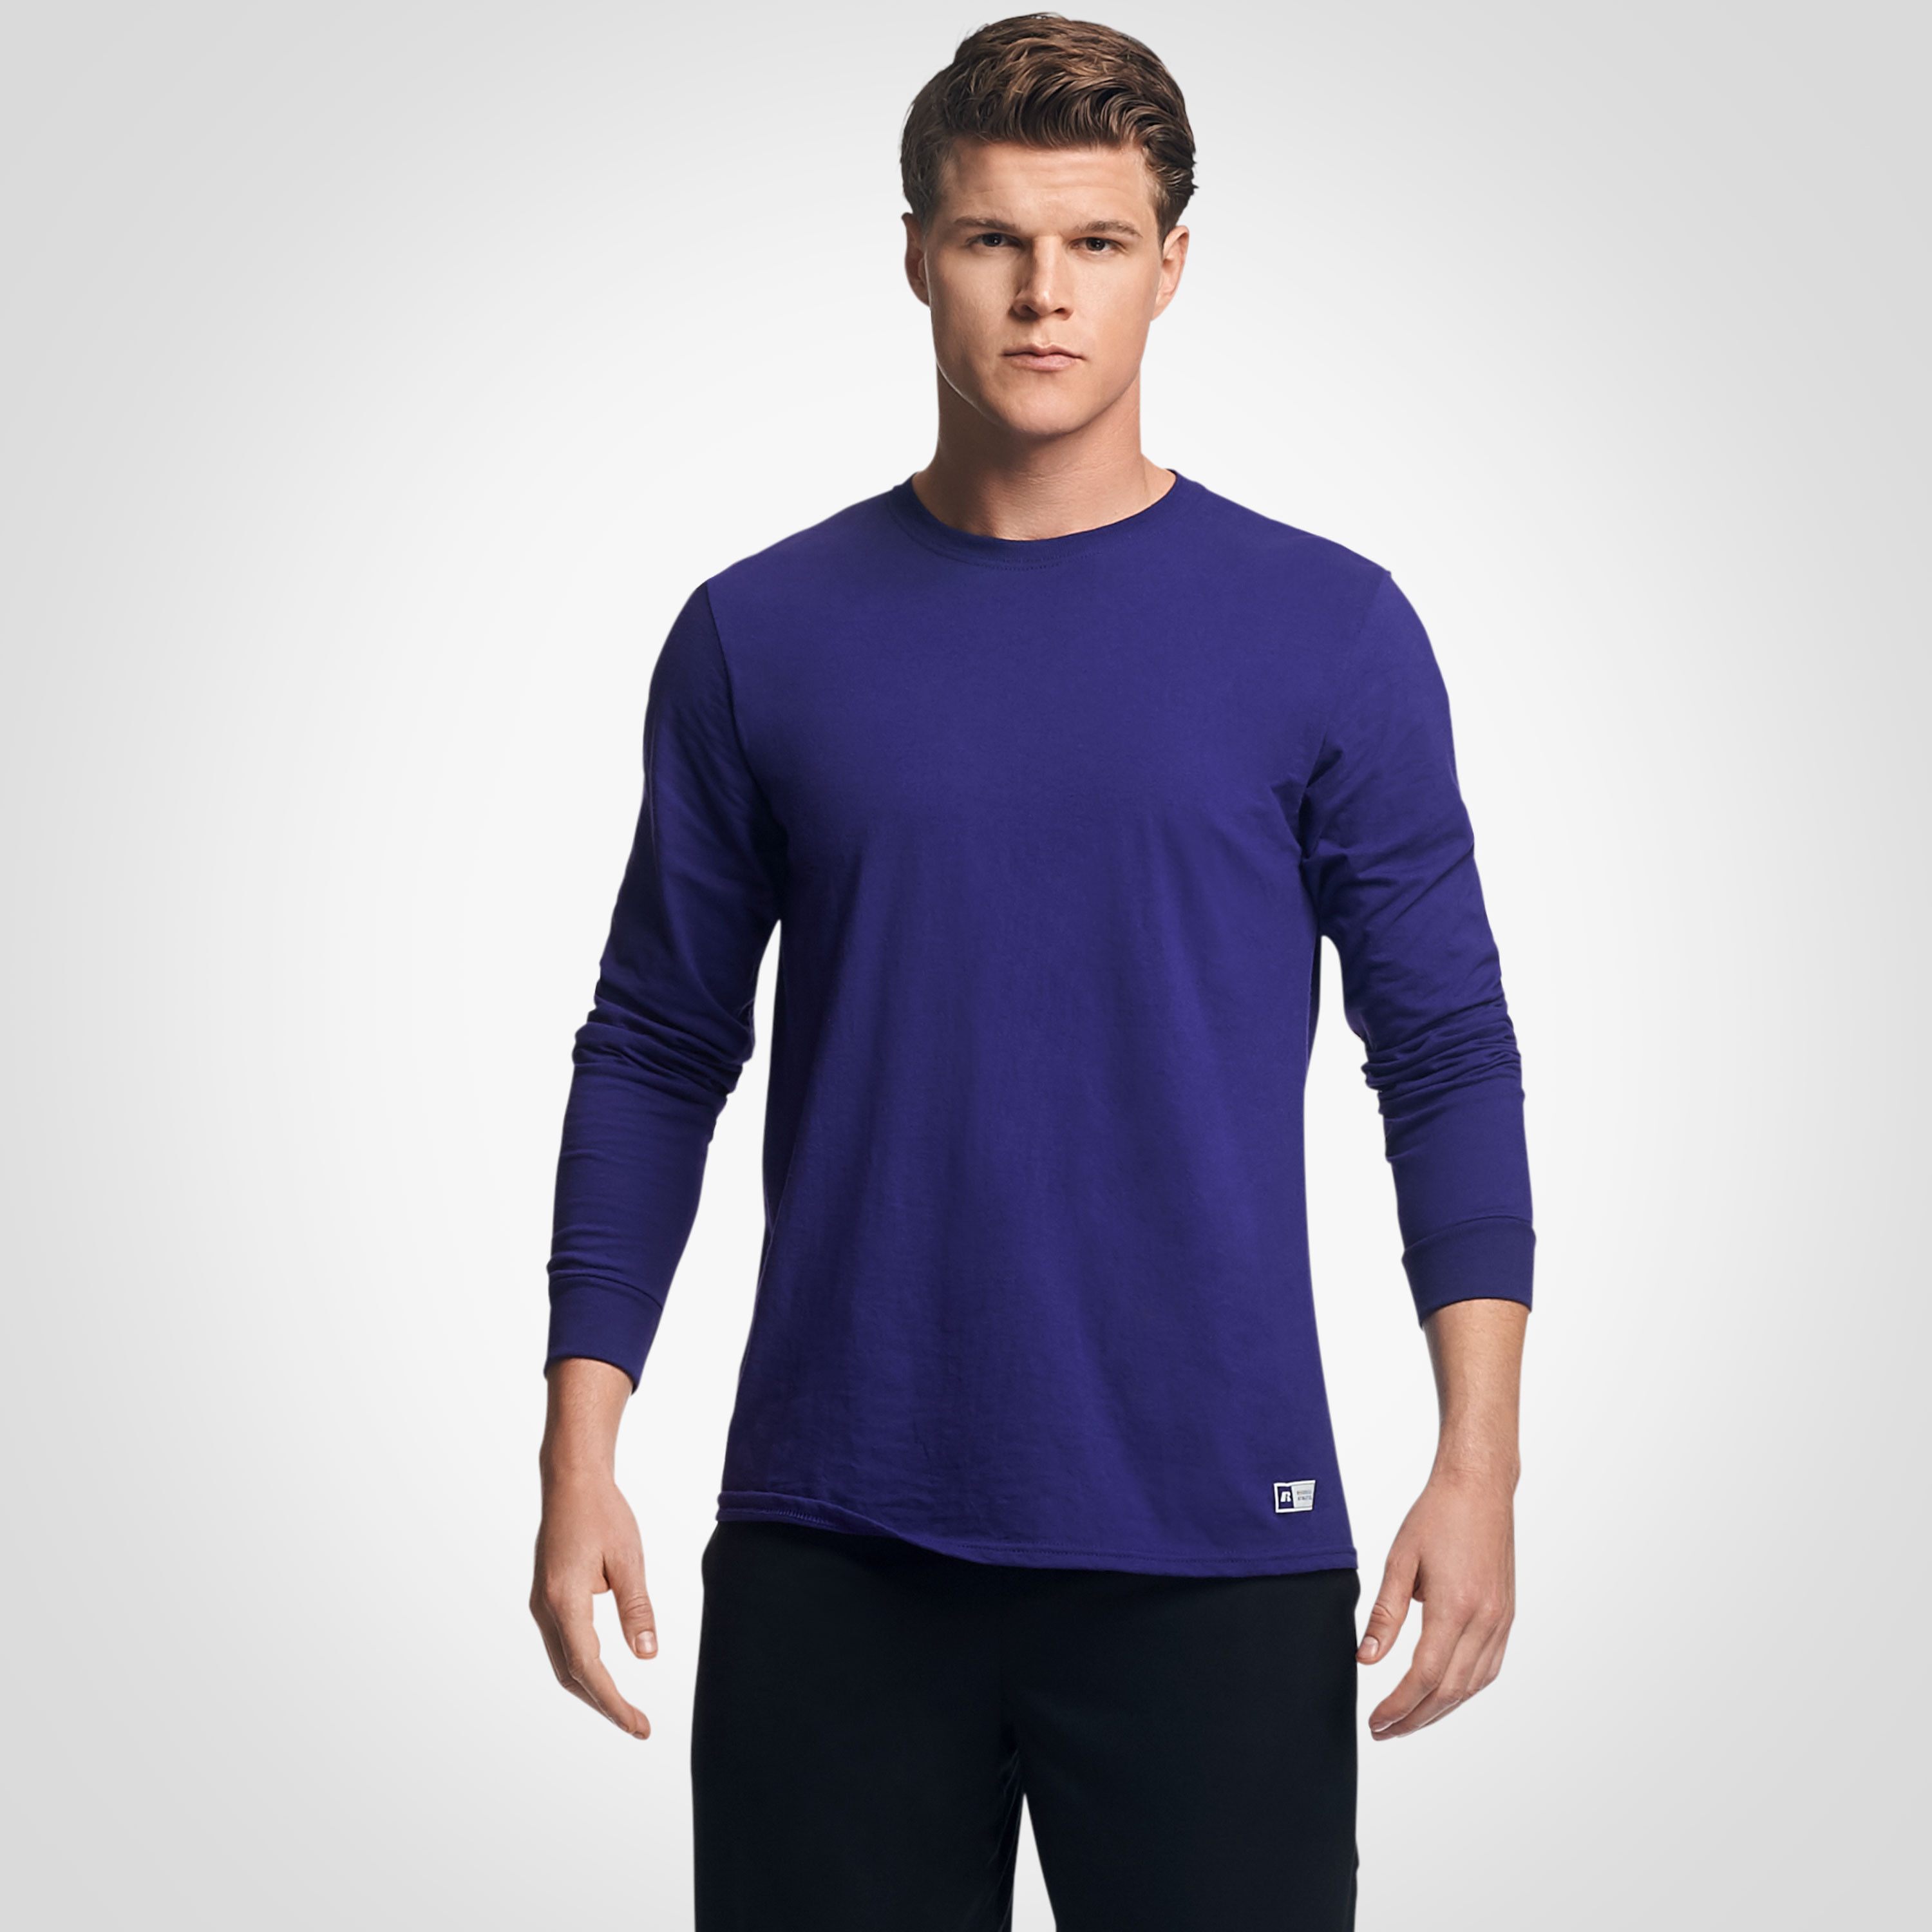 mens purple athletic shirt